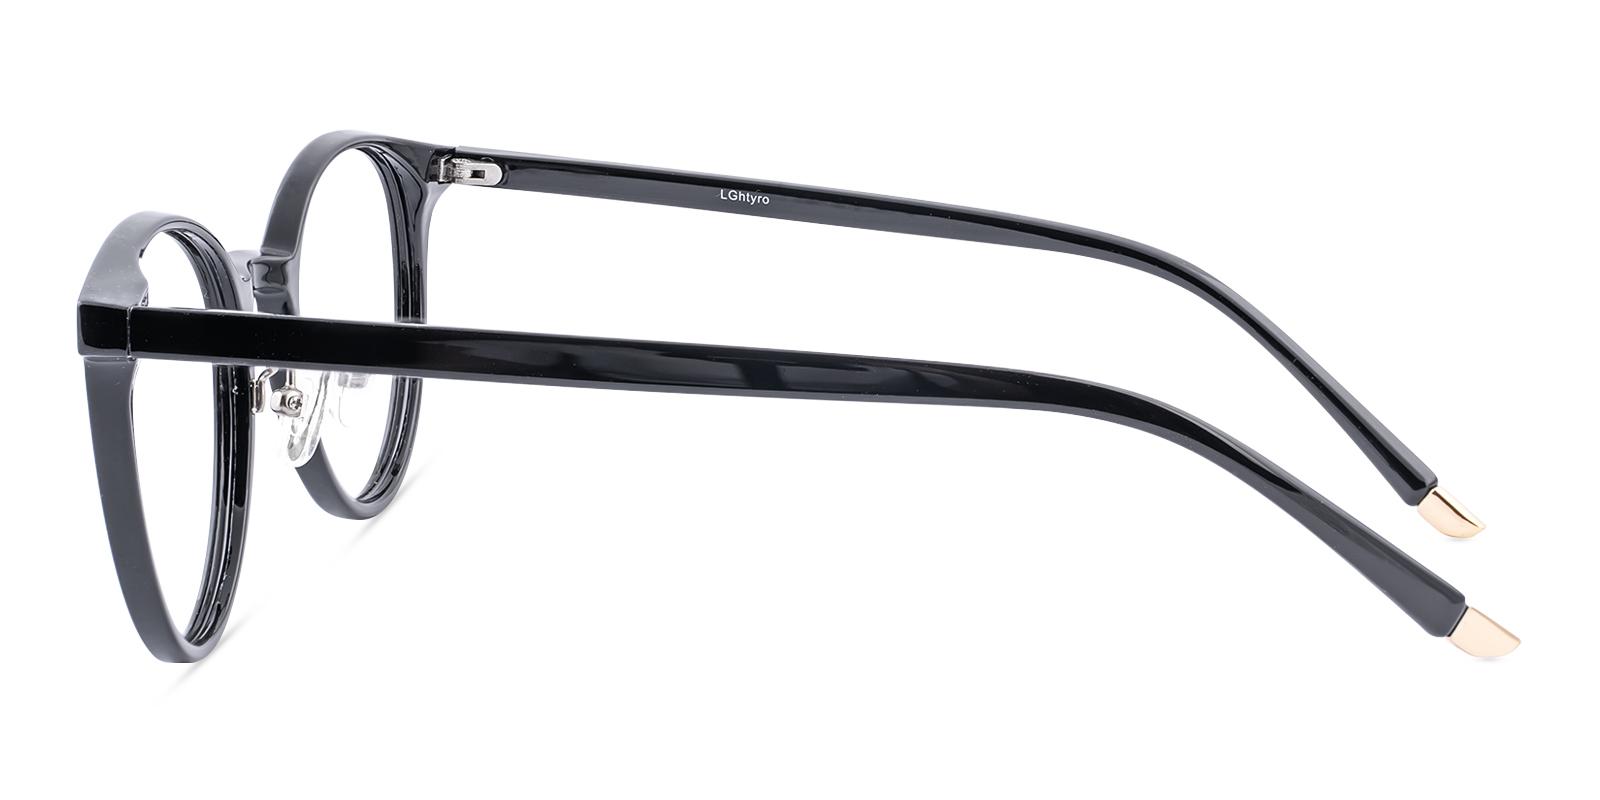 Salate Black Plastic Eyeglasses , NosePads Frames from ABBE Glasses